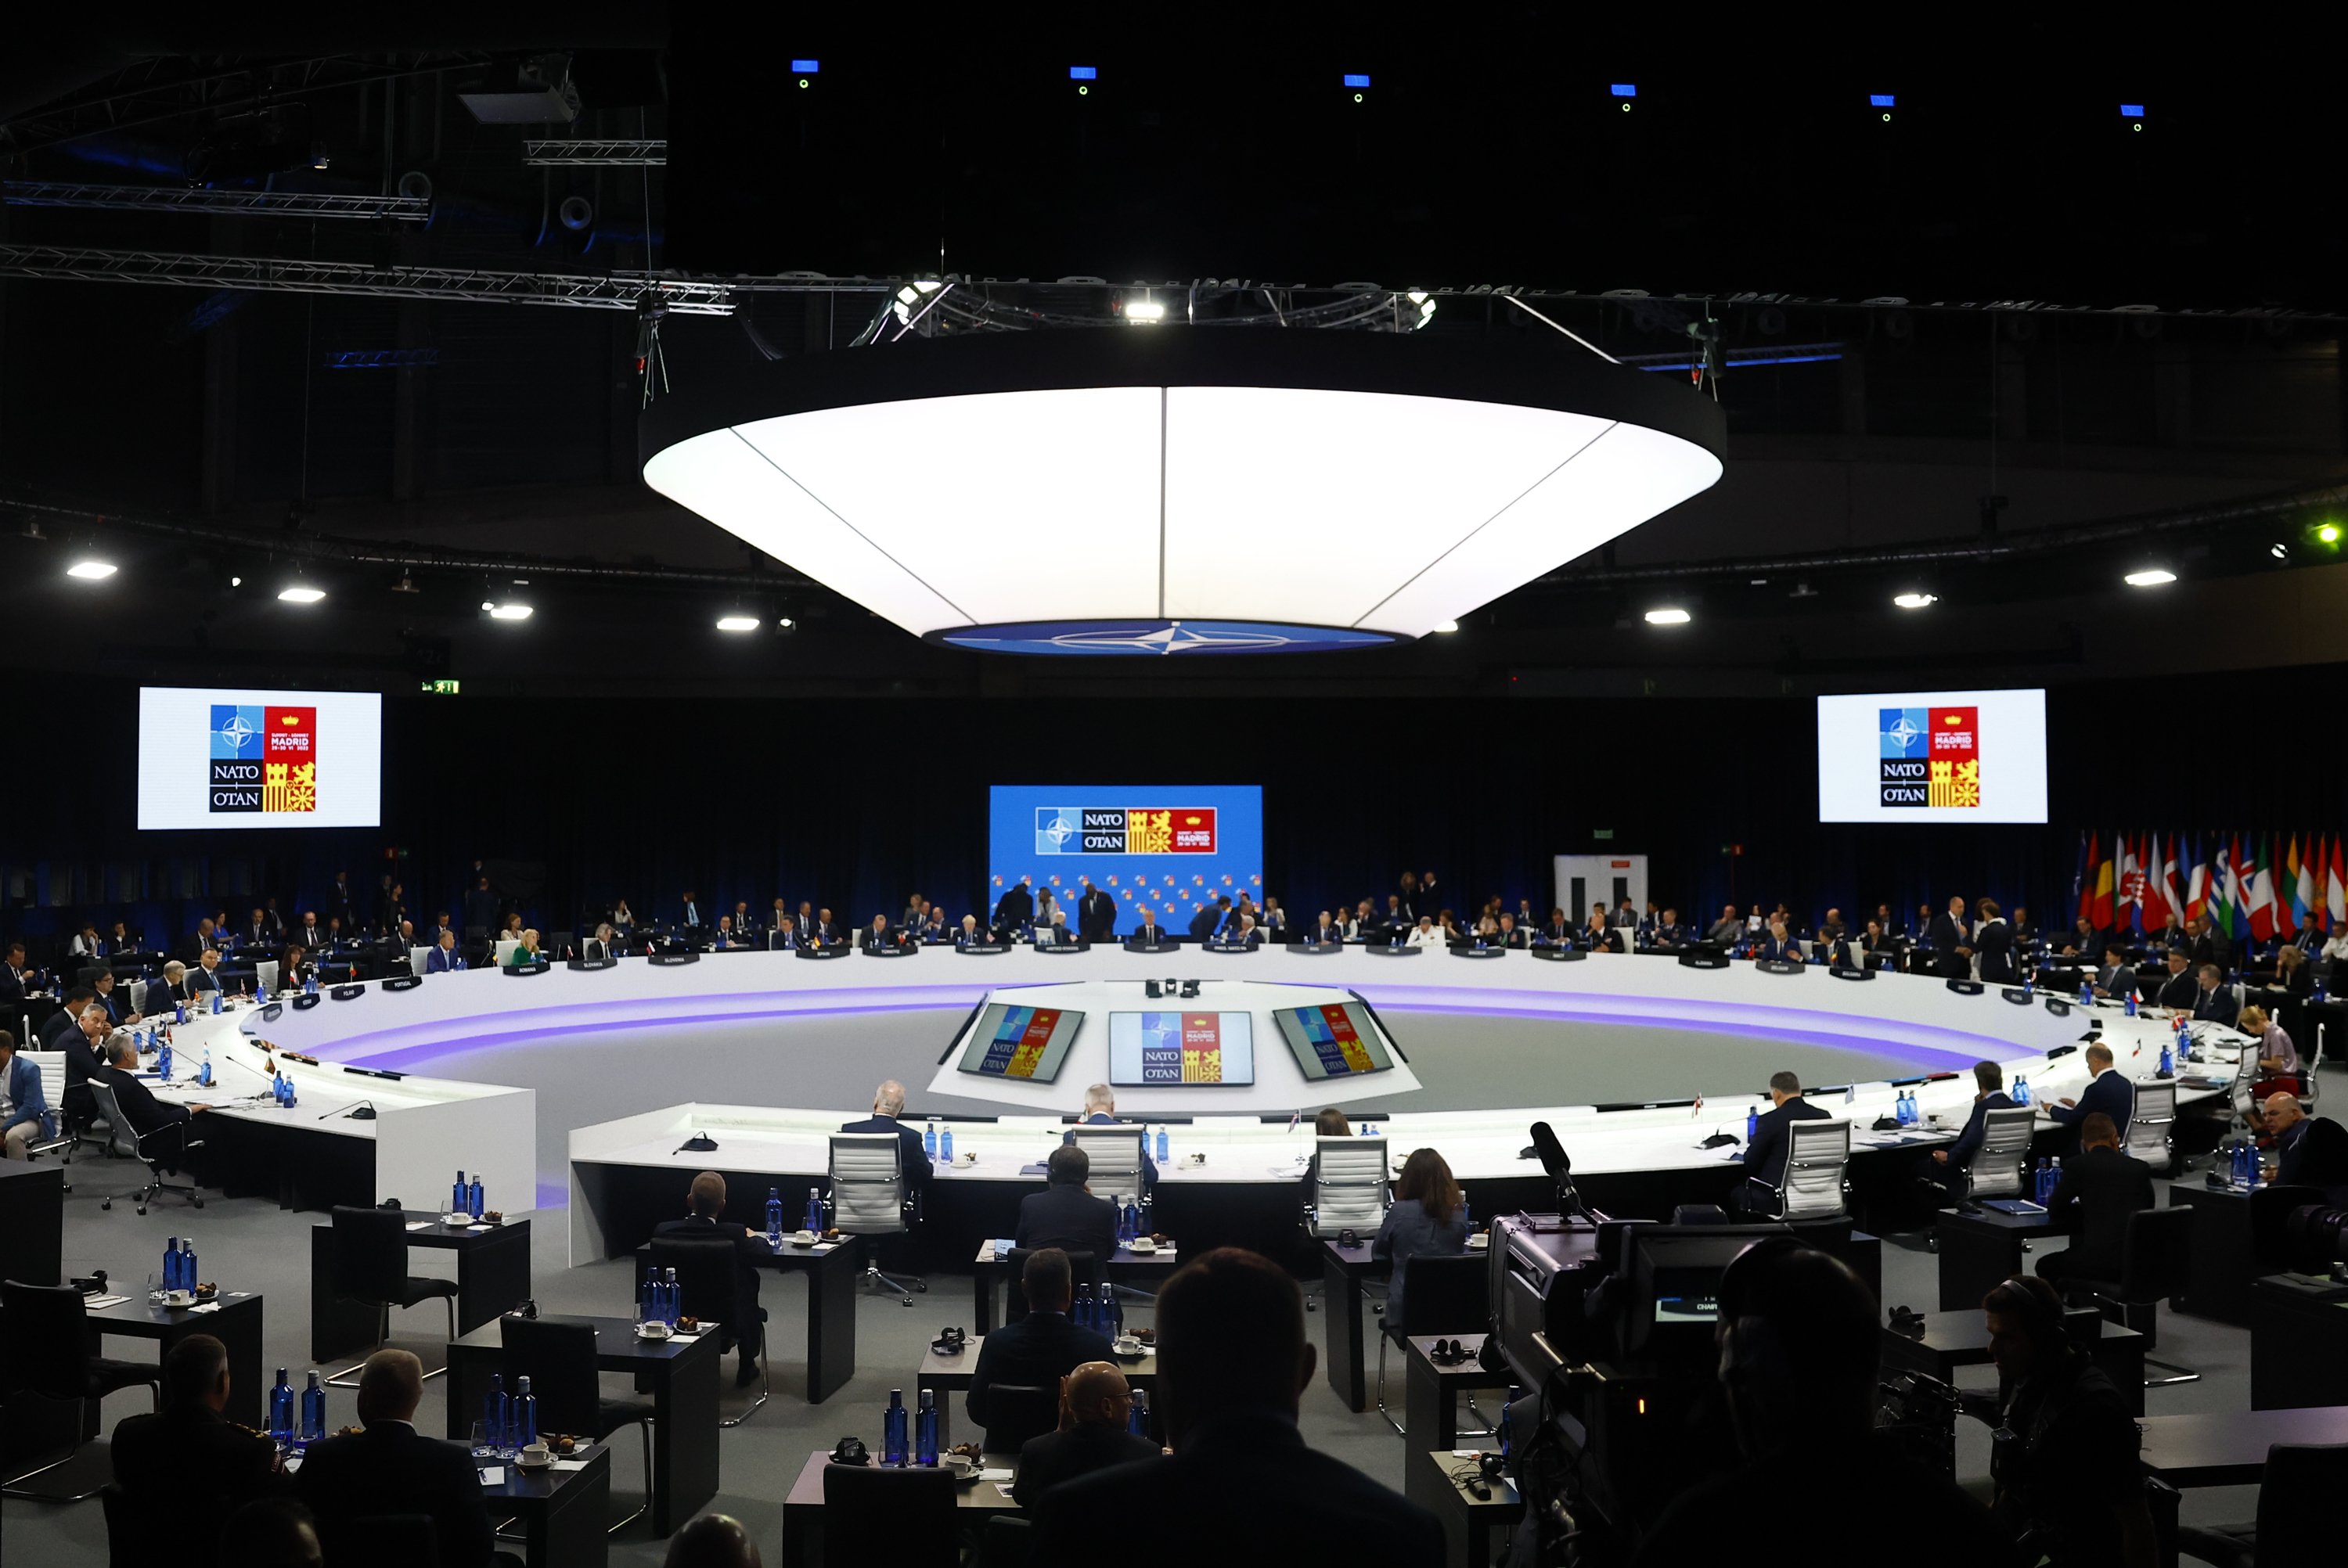 Cimera de l'OTAN a Madrid 2022 | DIRECTE: Última reunió dels líders dels països membres